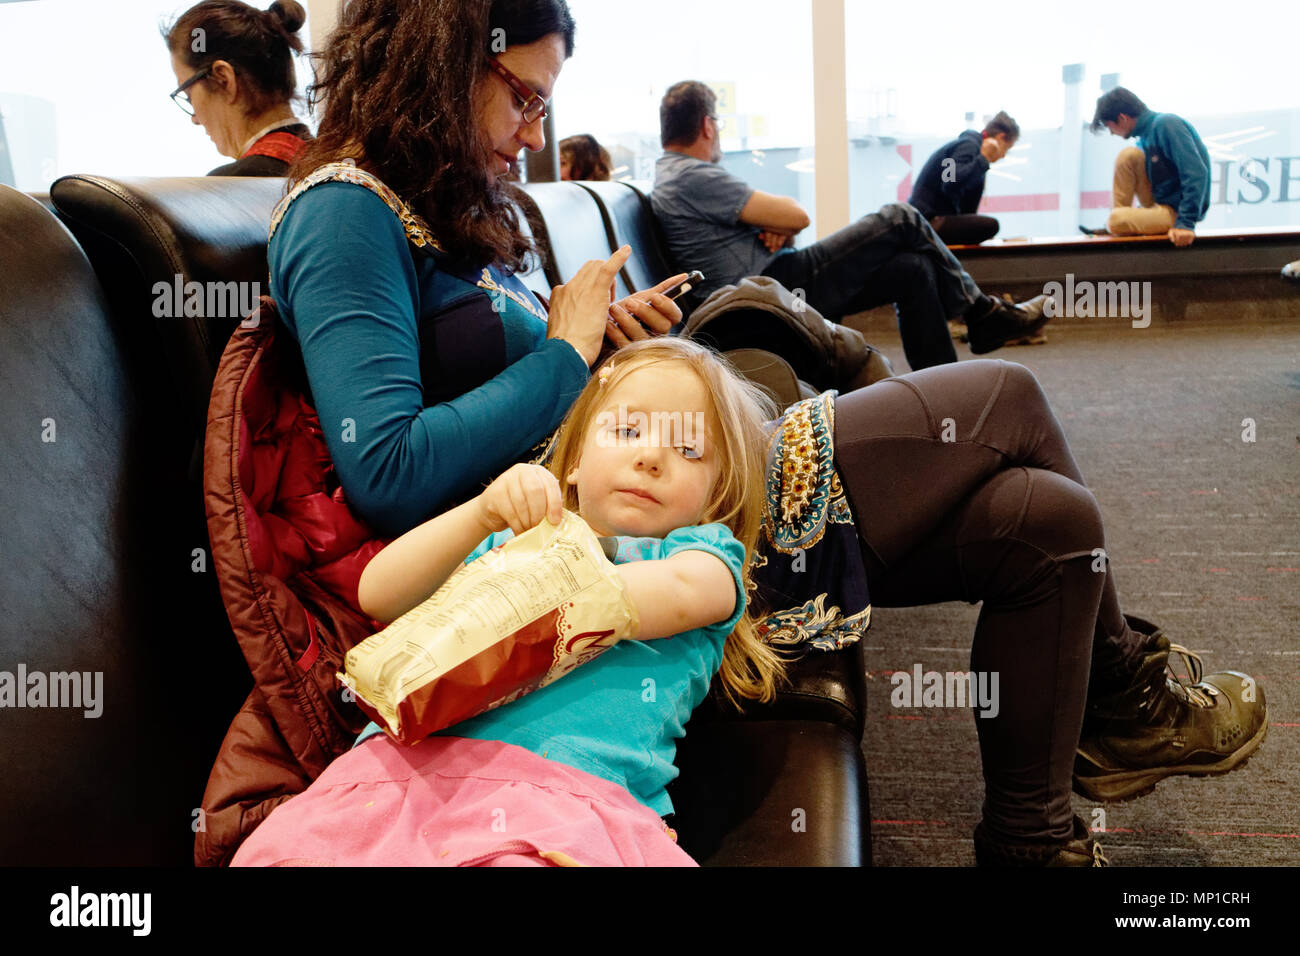 Une mère à l'aide de son iphone tandis que sa fille se détend, se penchant en arrière sur sa cuisse de manger un paquet de chips en attendant leur vol pour être appelé Banque D'Images